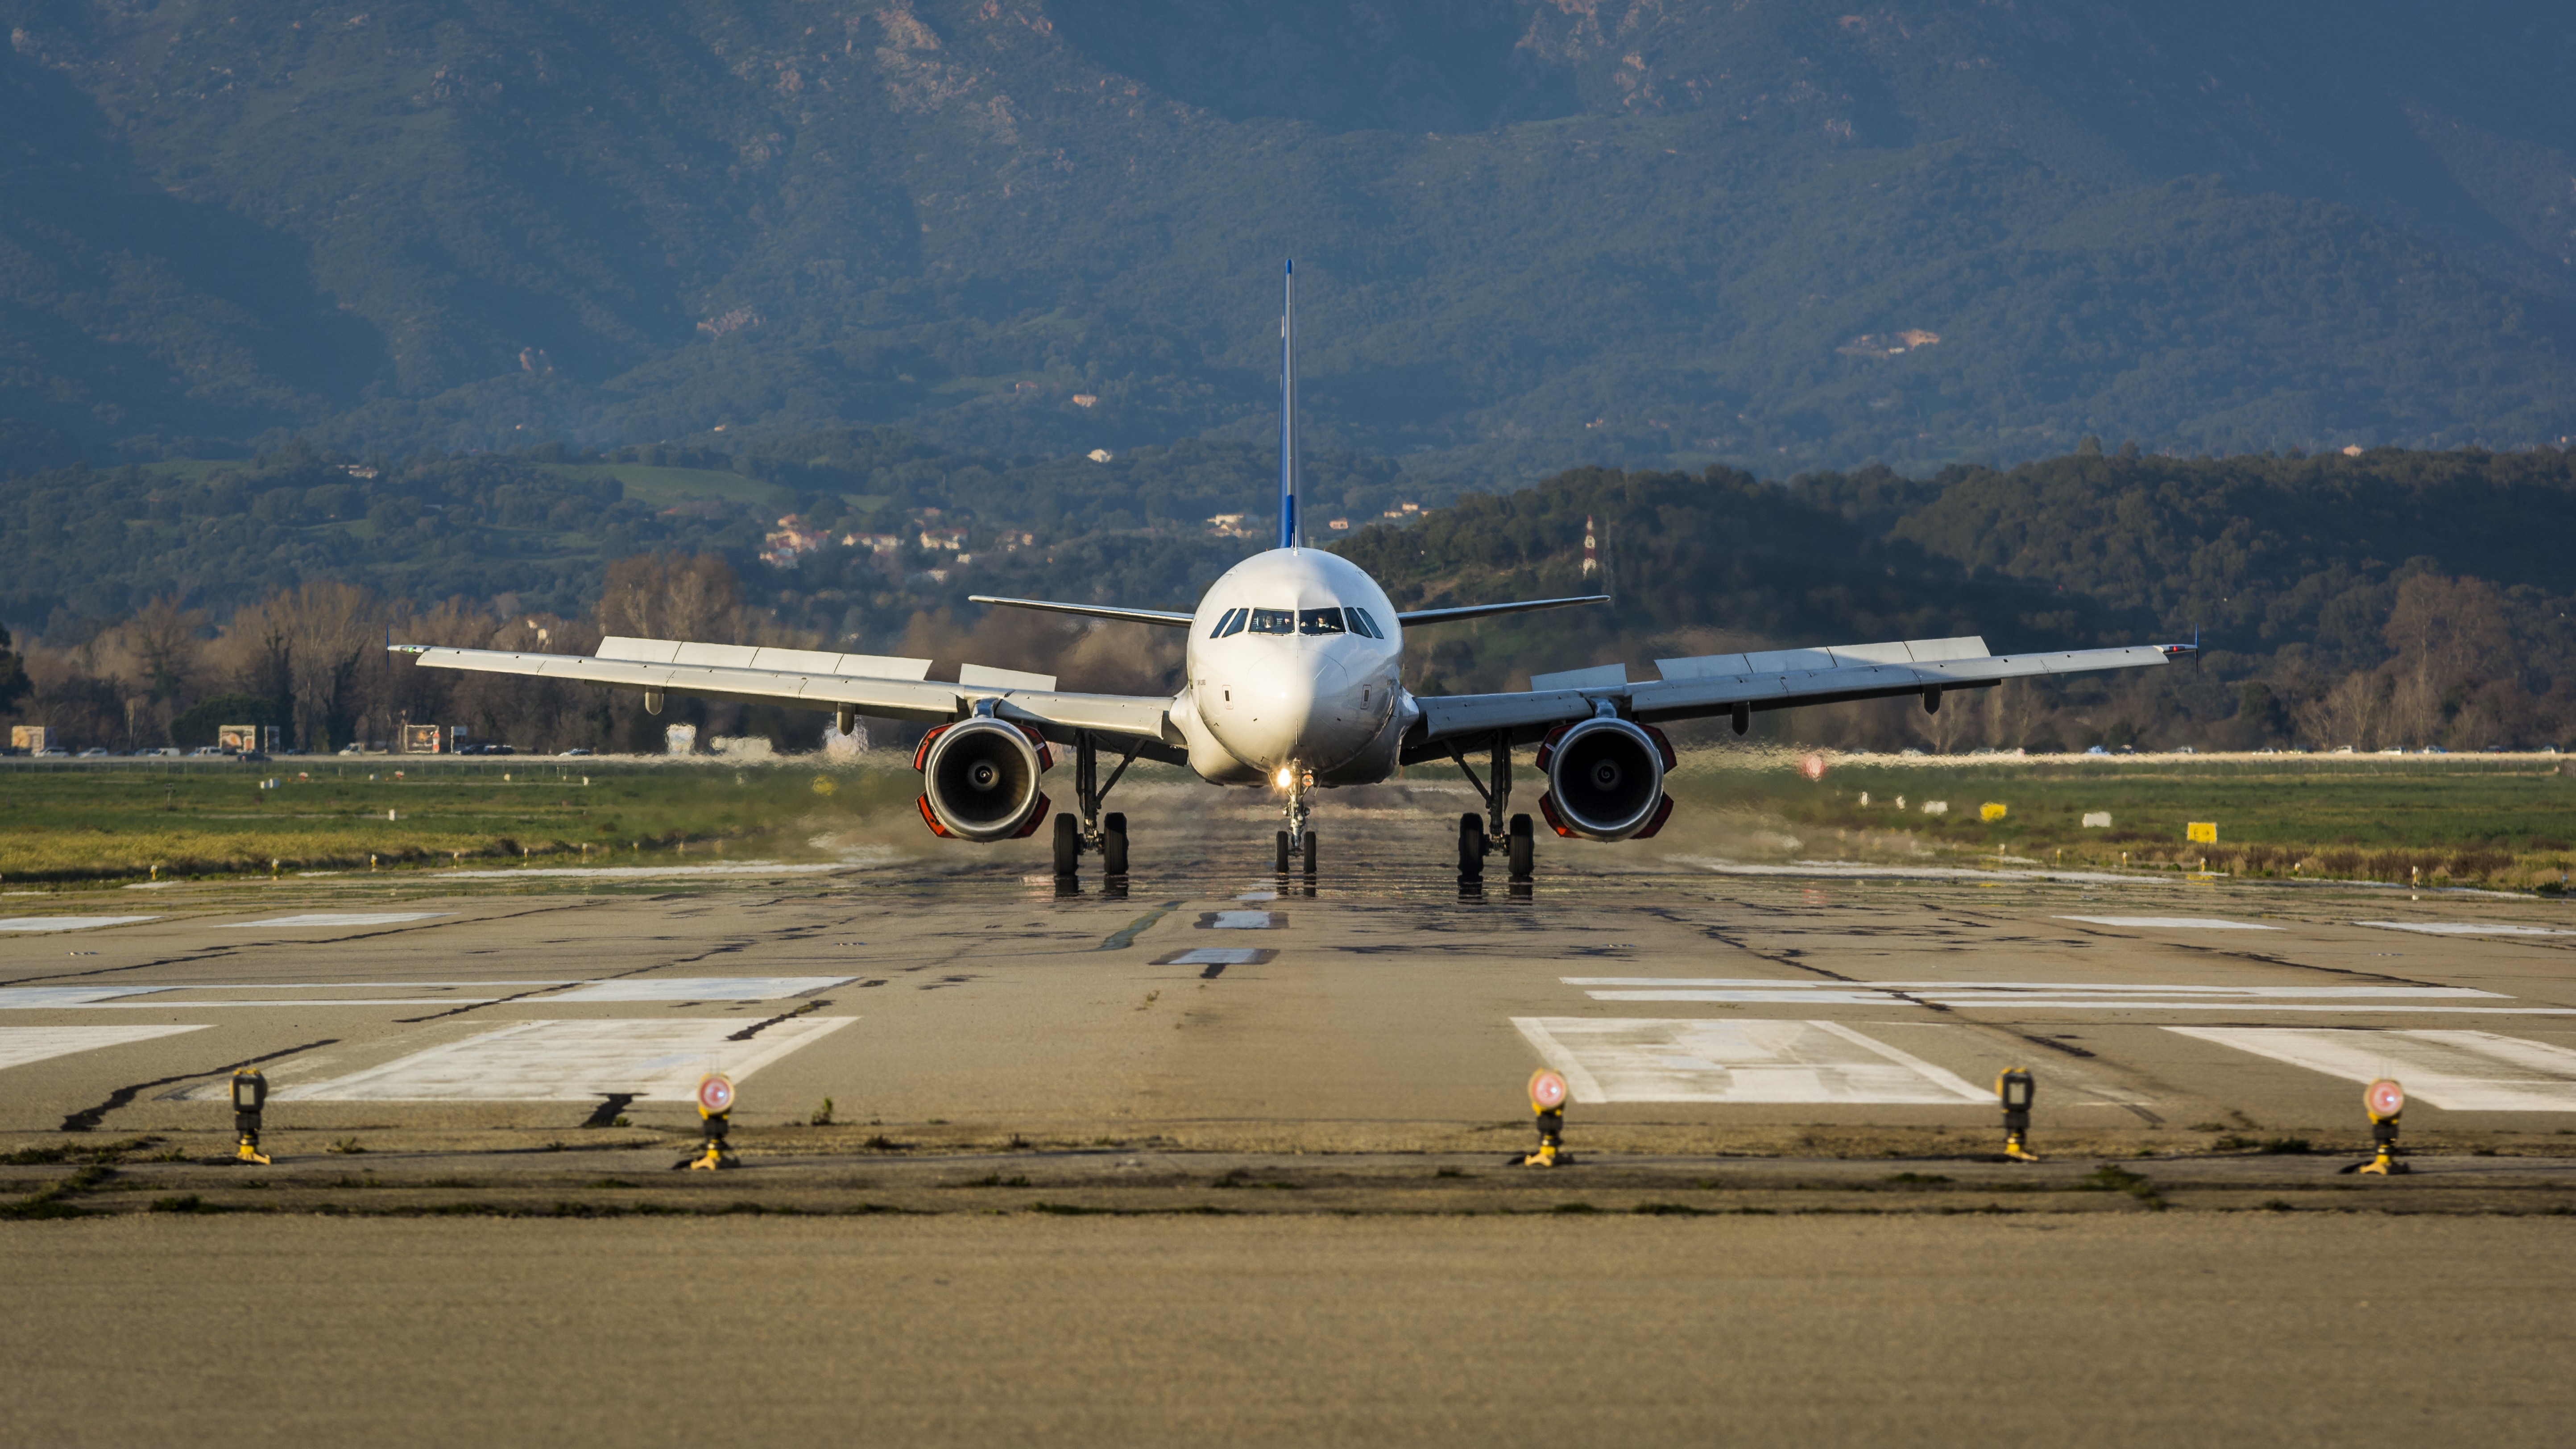 General 5774x3248 airplane runway aircraft vehicle frontal view passenger aircraft